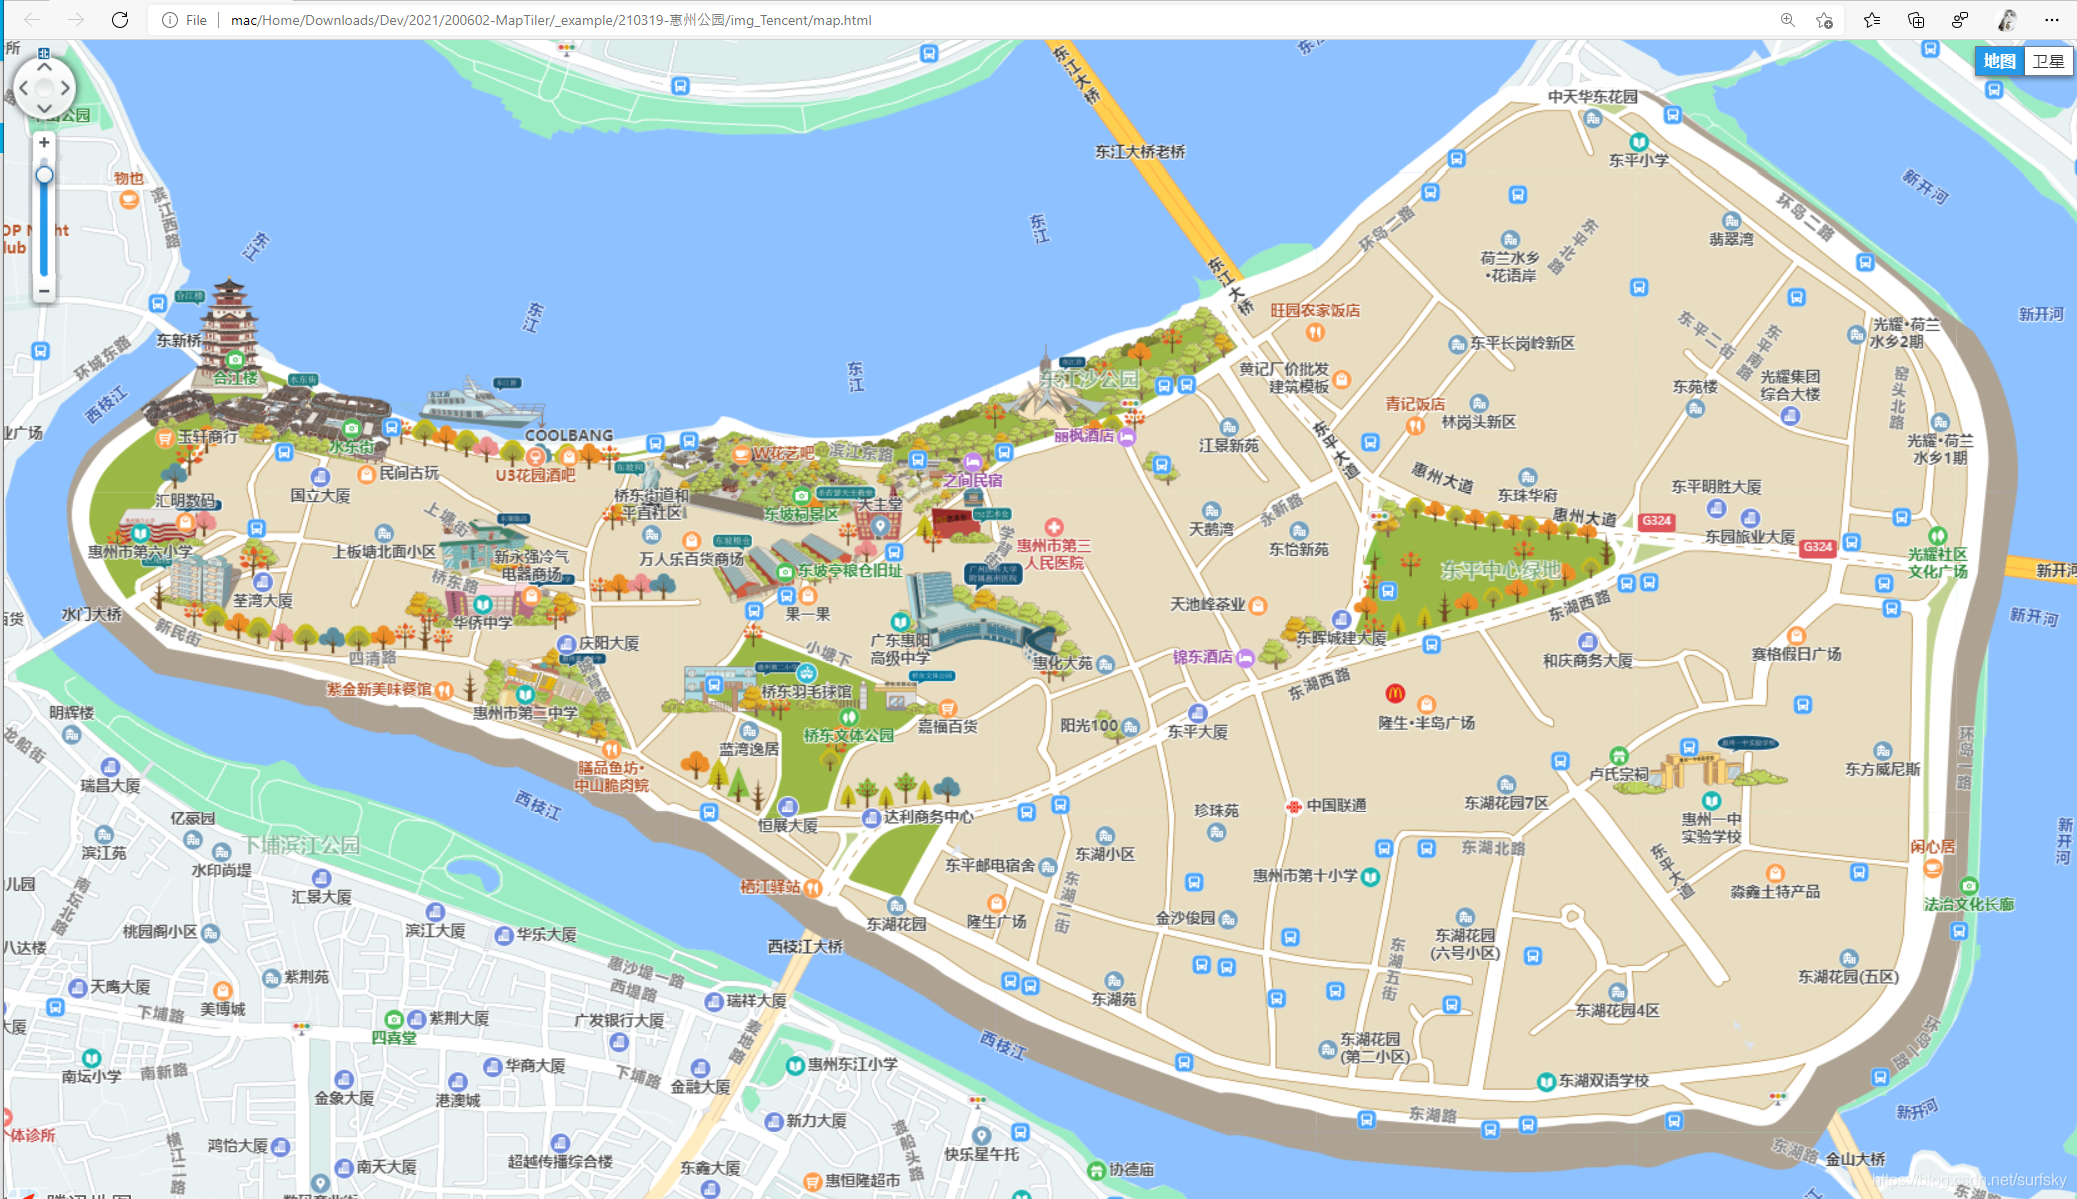 百度、高德、腾讯、天地图、谷歌、必应地图切片切图工具 MapCutter（旧名MapTiler），支持超大图、高清切片、webgl、leaflet、maptalk、openlayers、cesium等(图30)